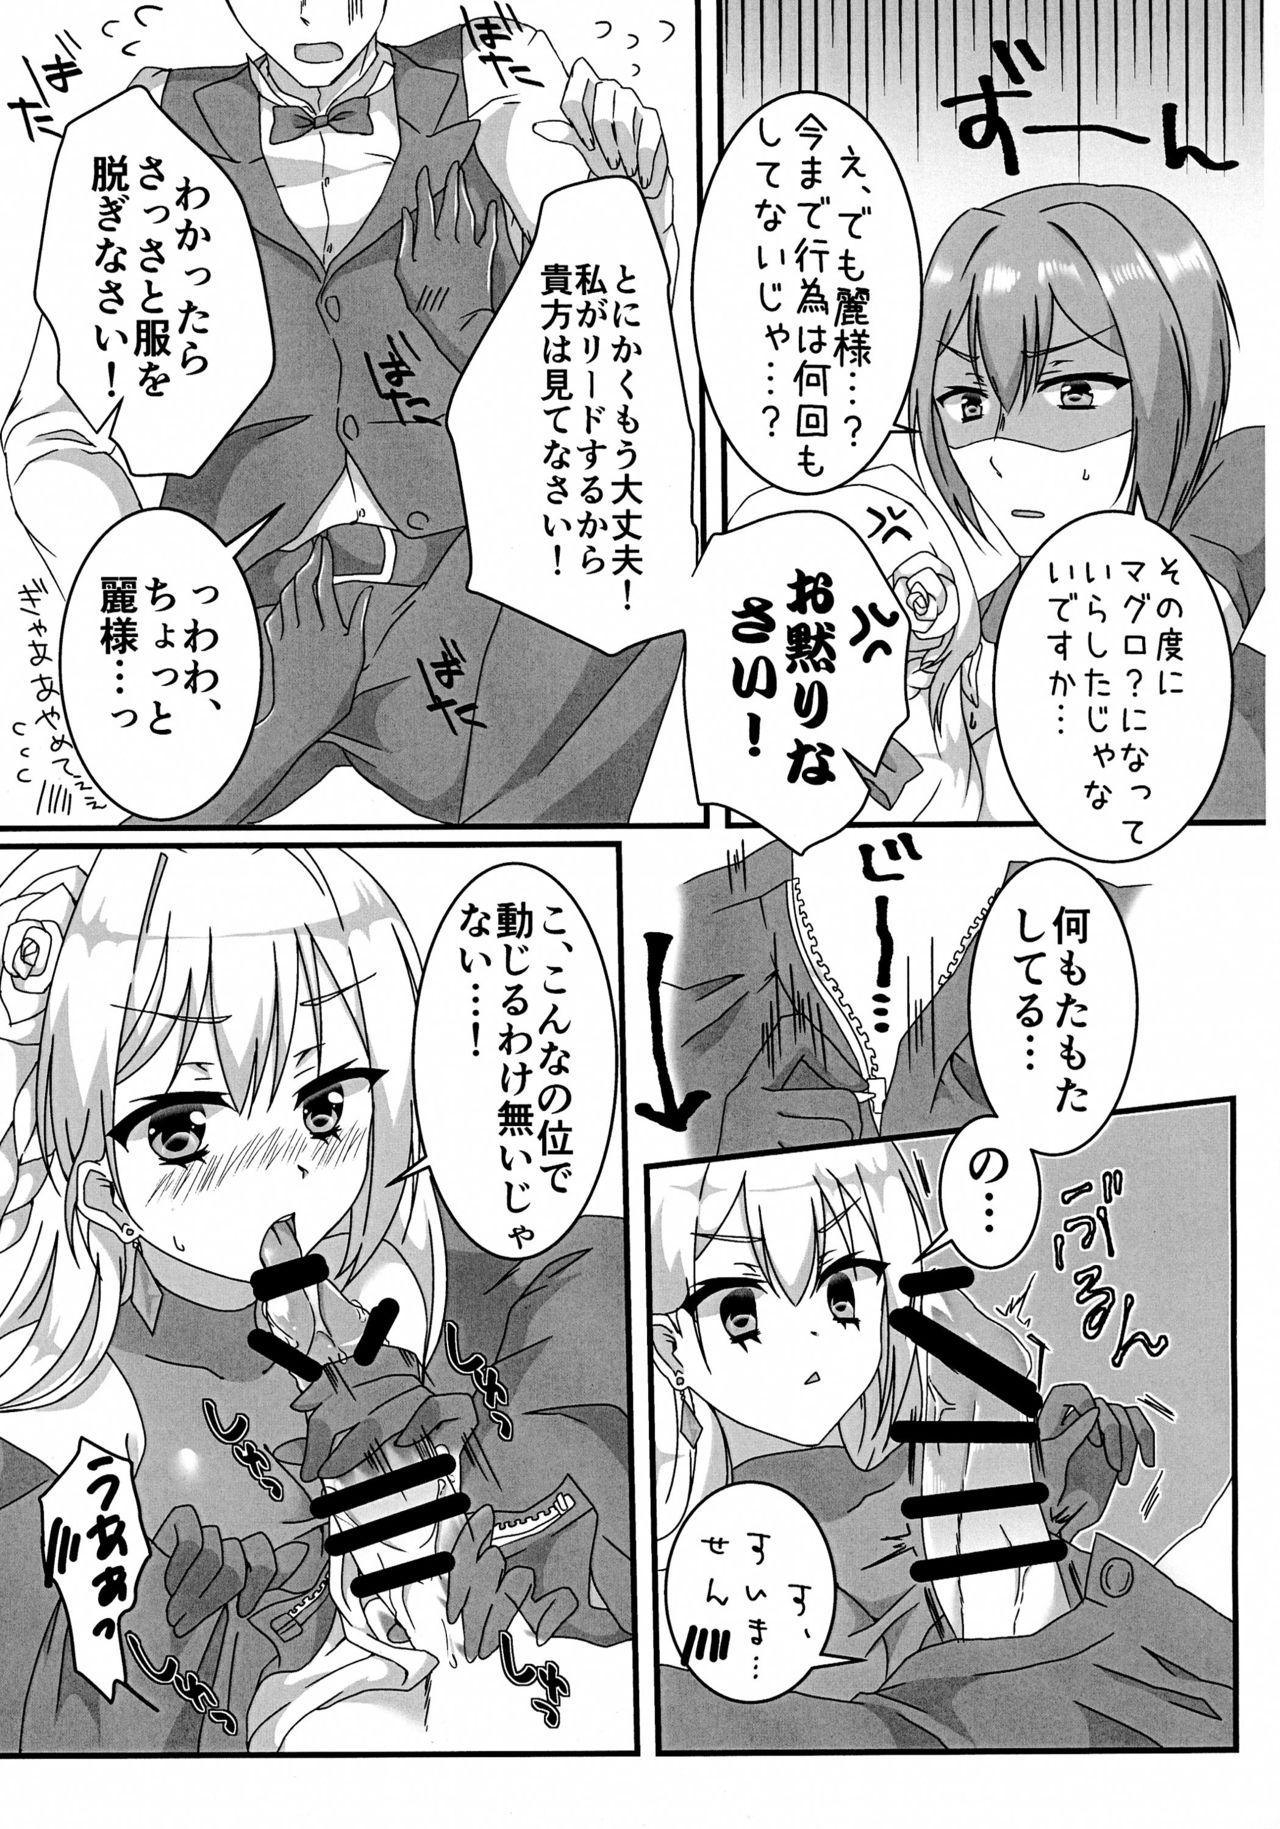 Snatch Ecchi na Ojou-sama wa suki desu ka? - Hidan no aria Cream - Page 7